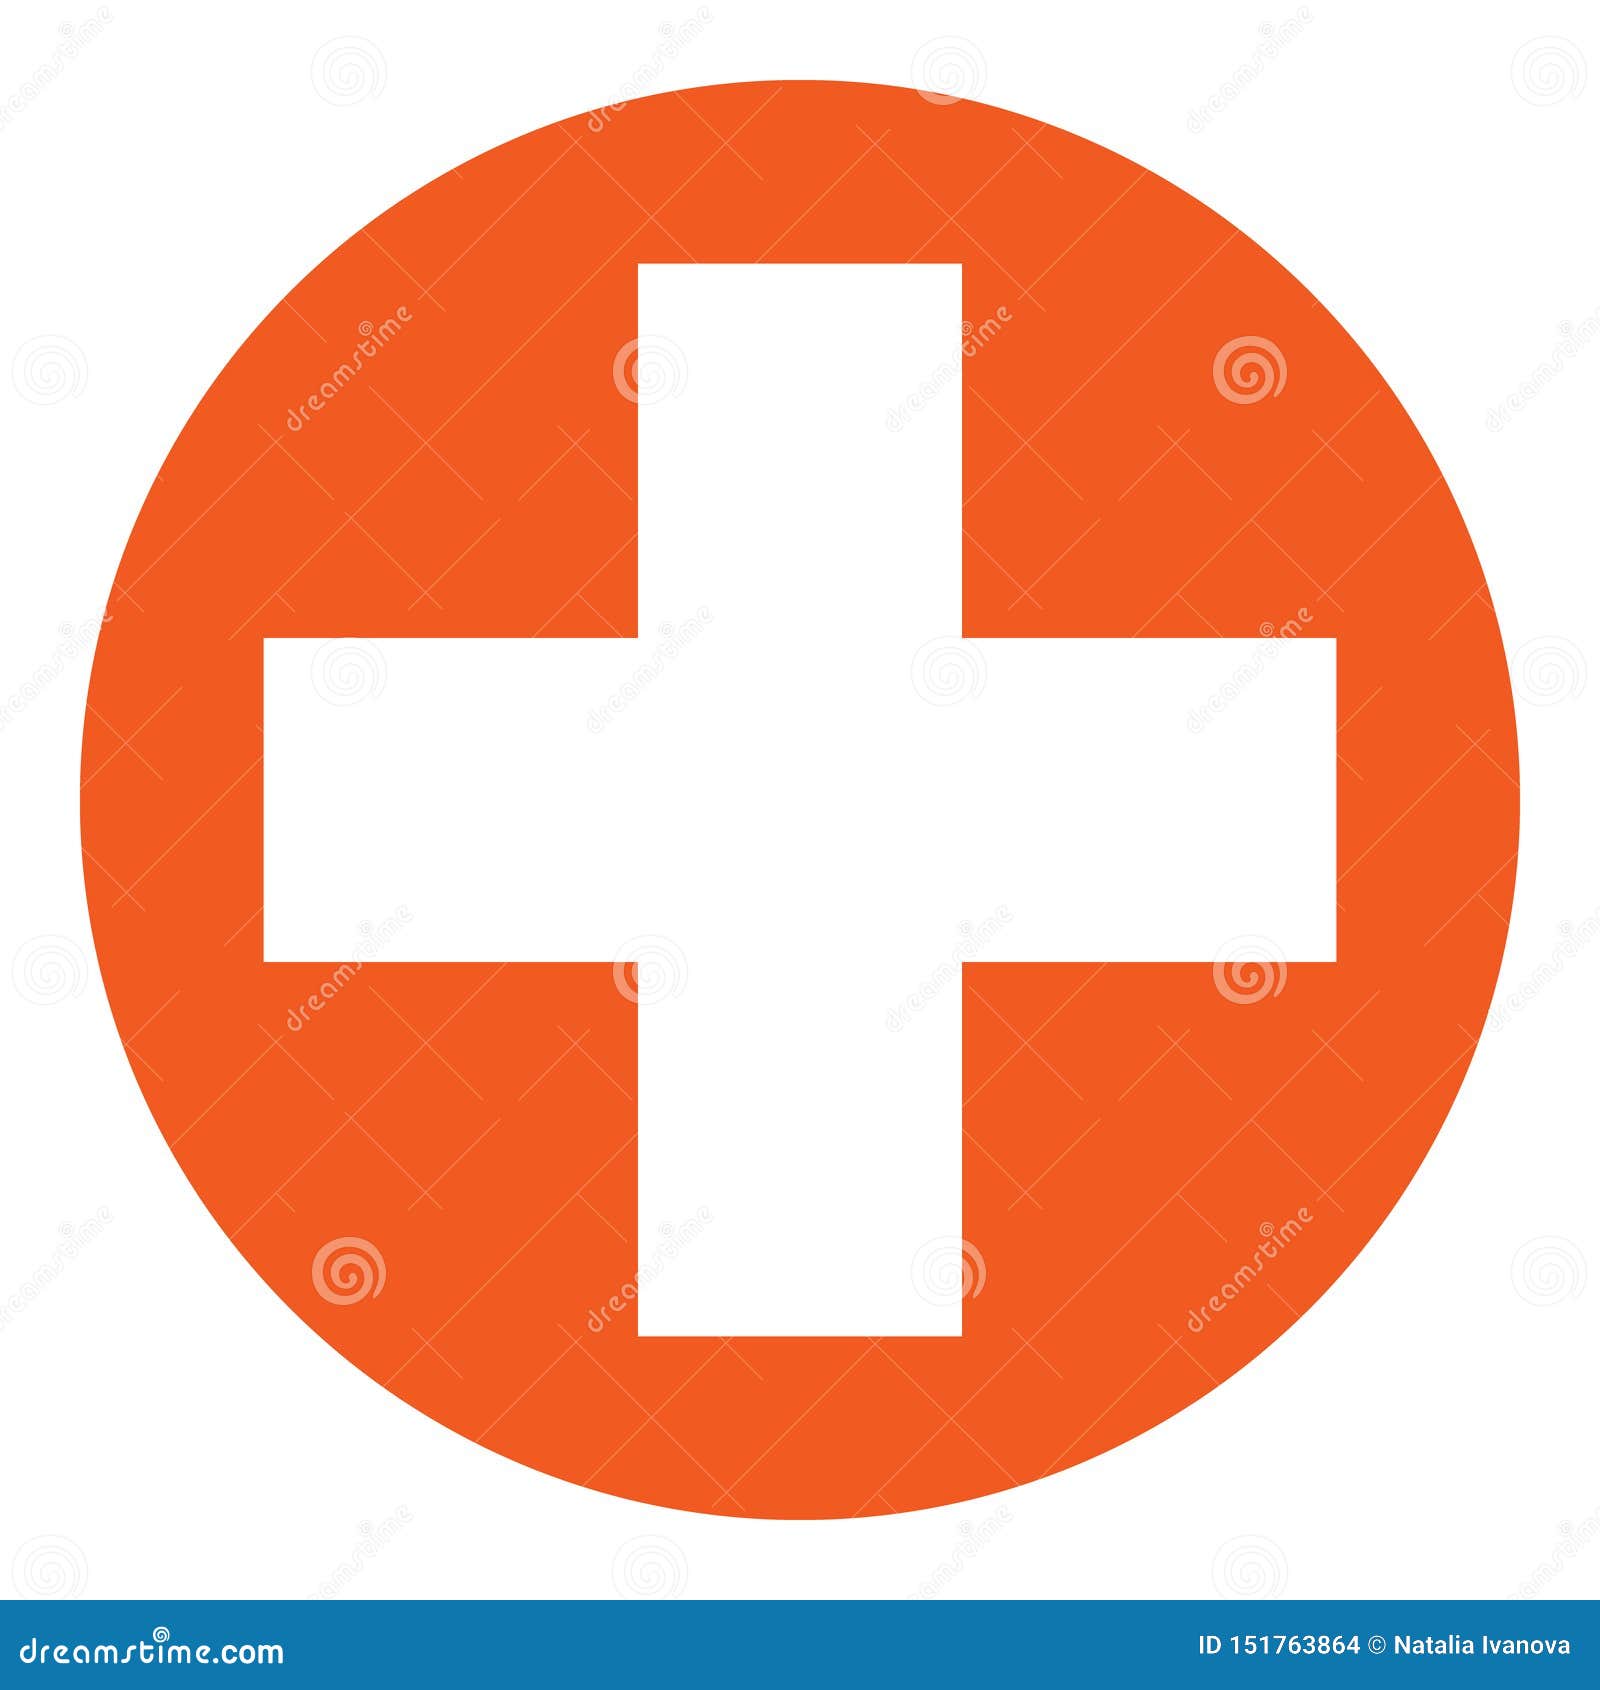 Hospital Cross Symbol đem lại cho người xem cảm giác an toàn và chắc chắn. Hãy cùng nhau khám phá vẻ đẹp của biểu tượng này và tìm hiểu thêm về y tế và điều trị bệnh tật.